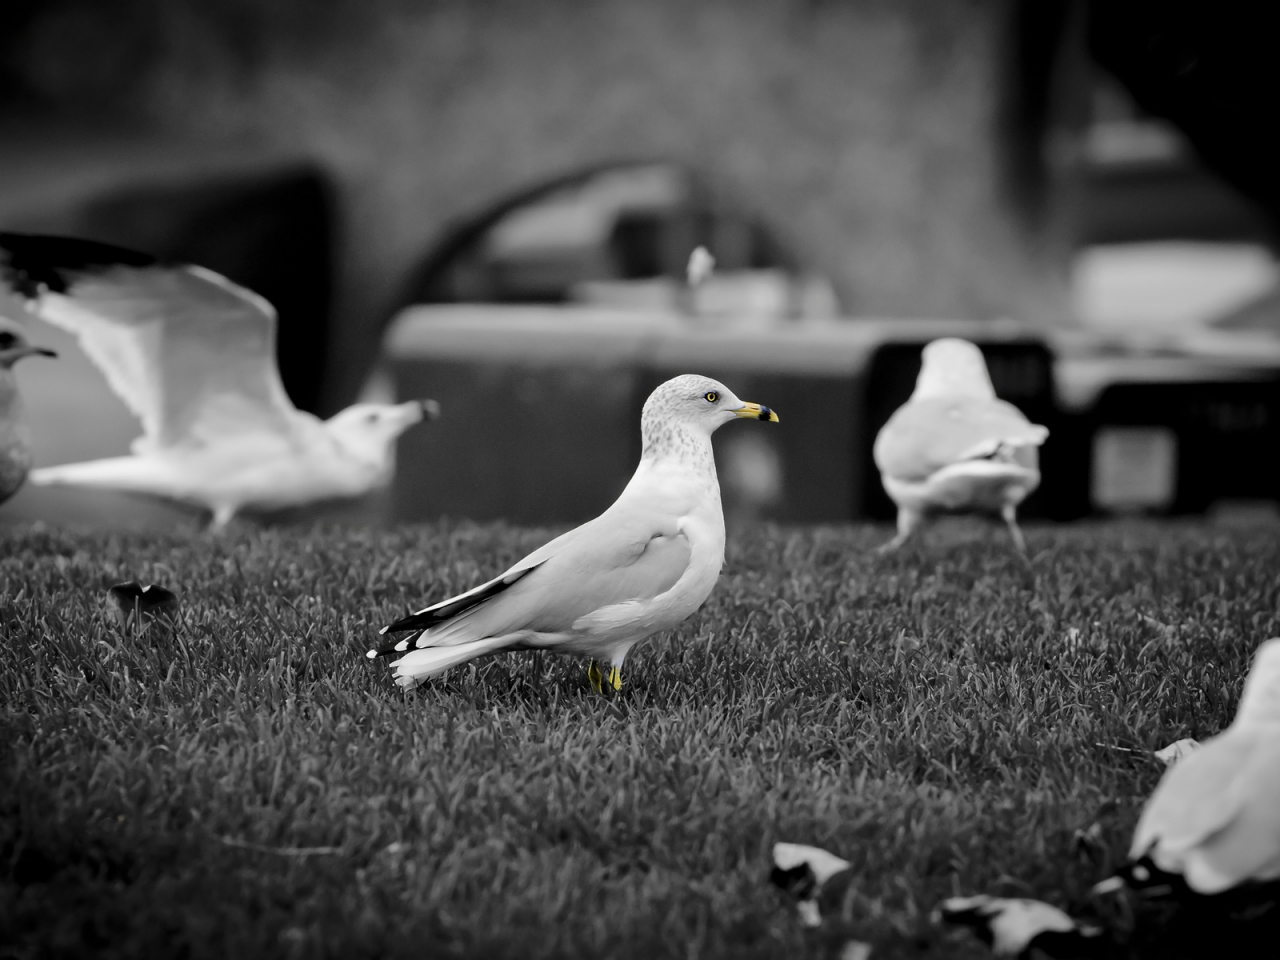 White doves for 1280 x 960 resolution